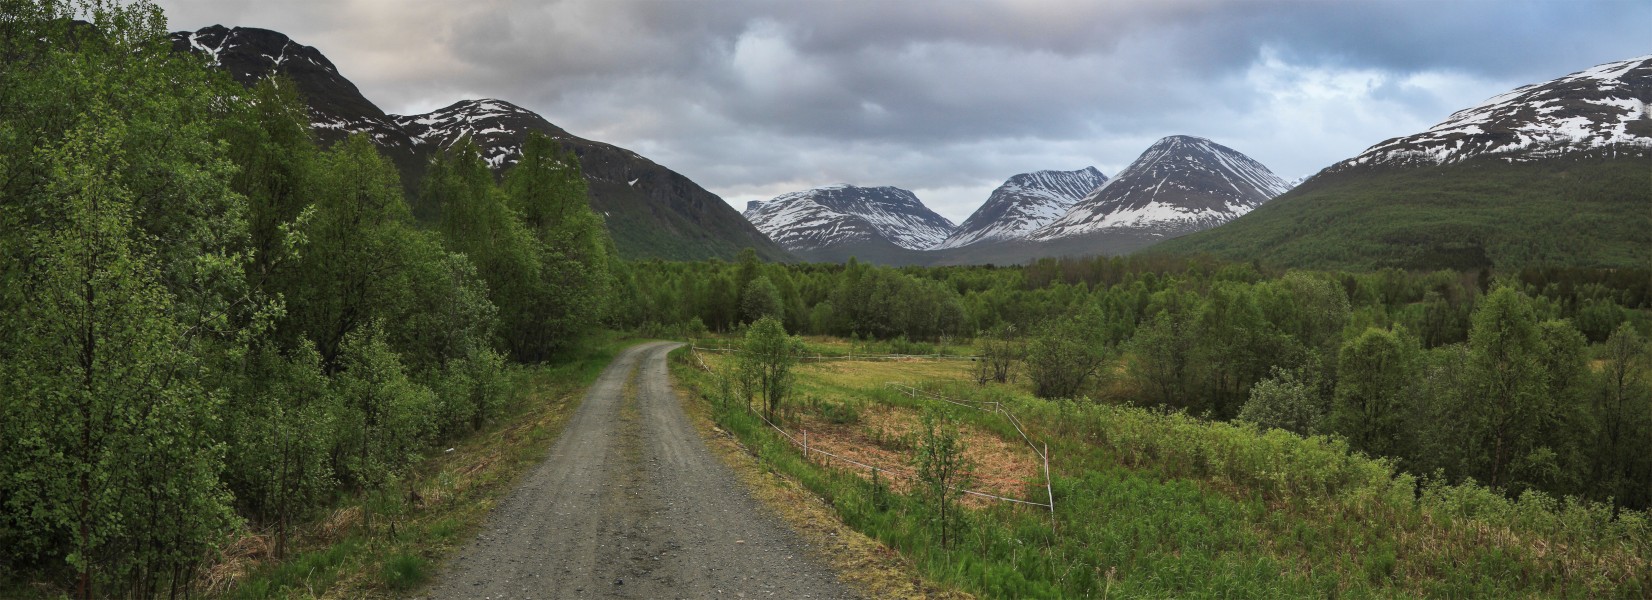 Balsfjordeidet landscape, 2011 June